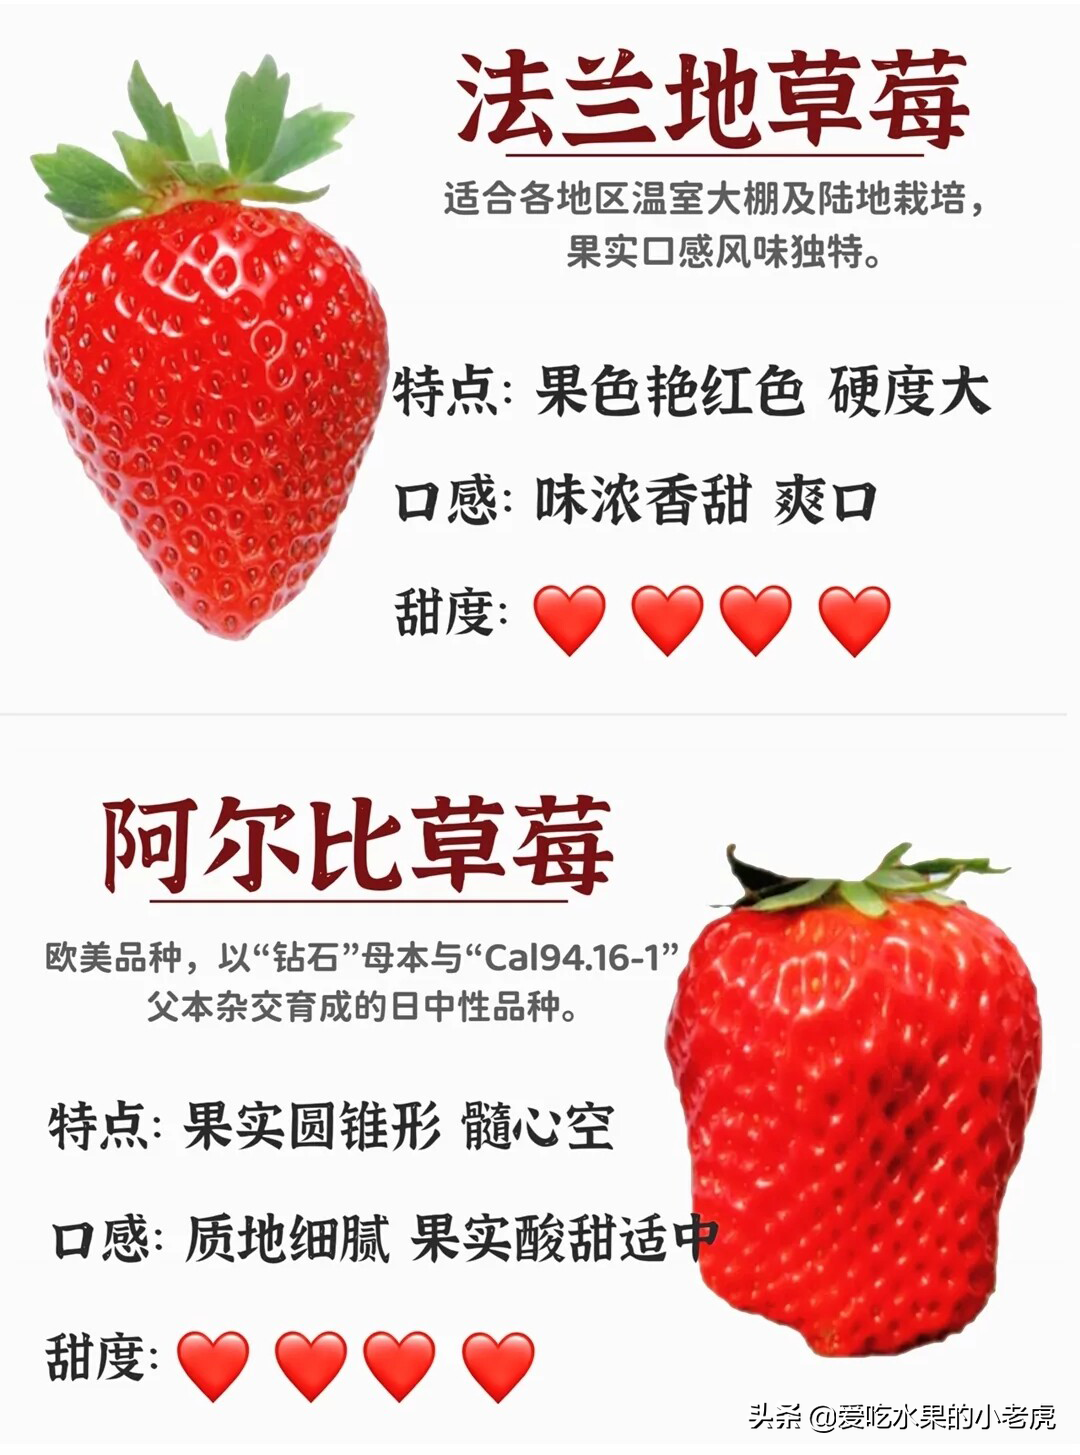 草莓品种大全名称图鉴图片